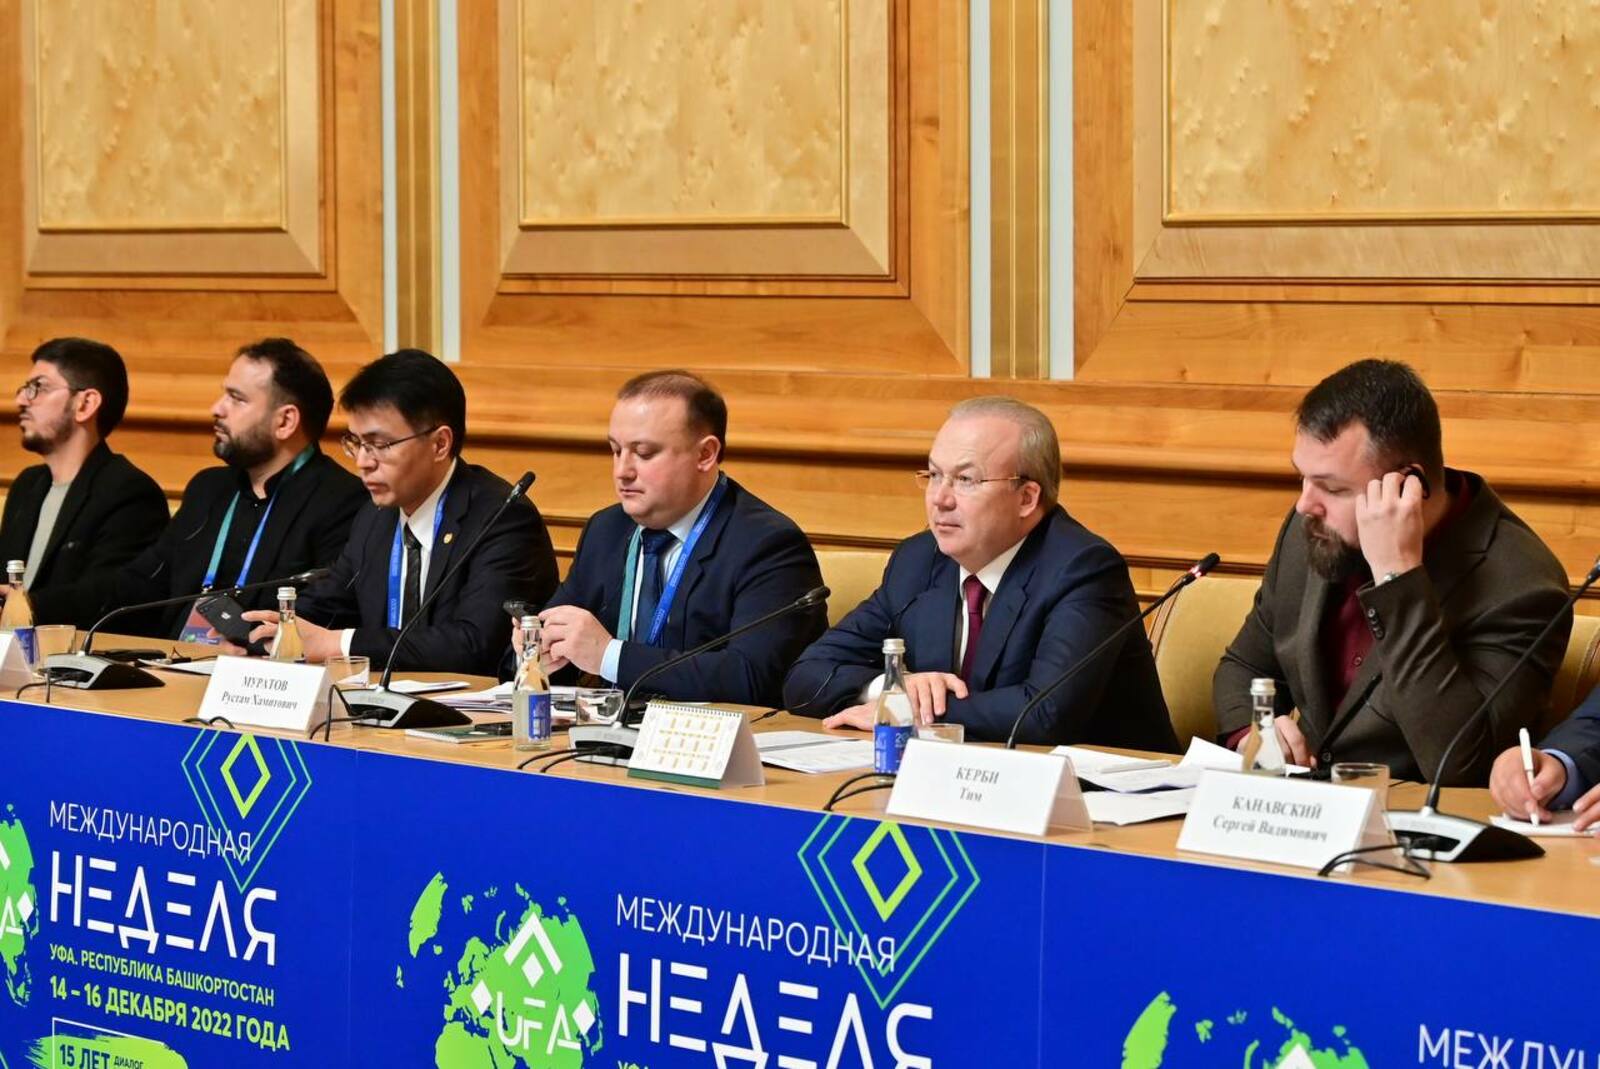 В Башкирии подвели итоги «Международной недели бизнеса» - 2022